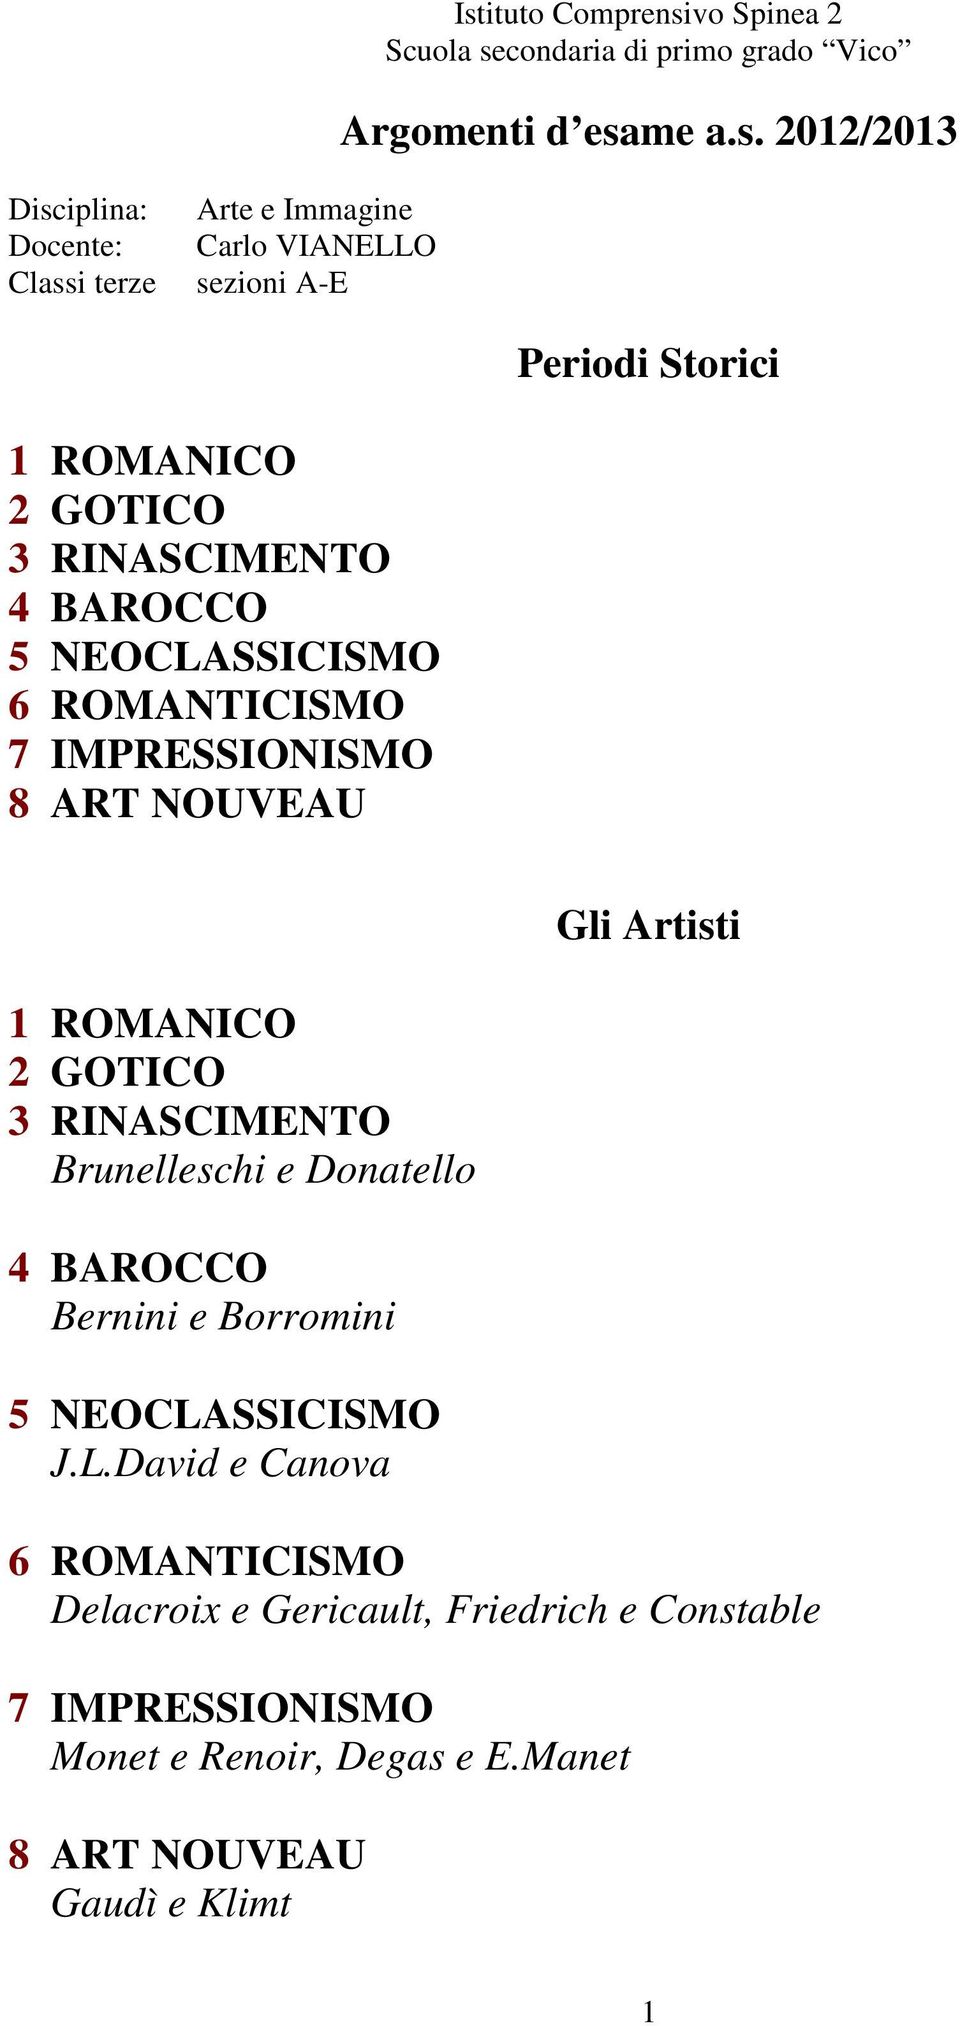 IMPRESSIONISMO 8 ART NOUVEAU Gli Artisti 1 ROMANICO 2 GOTICO 3 RINASCIMENTO Brunelleschi e Donatello 4 BAROCCO Bernini e Borromini 5